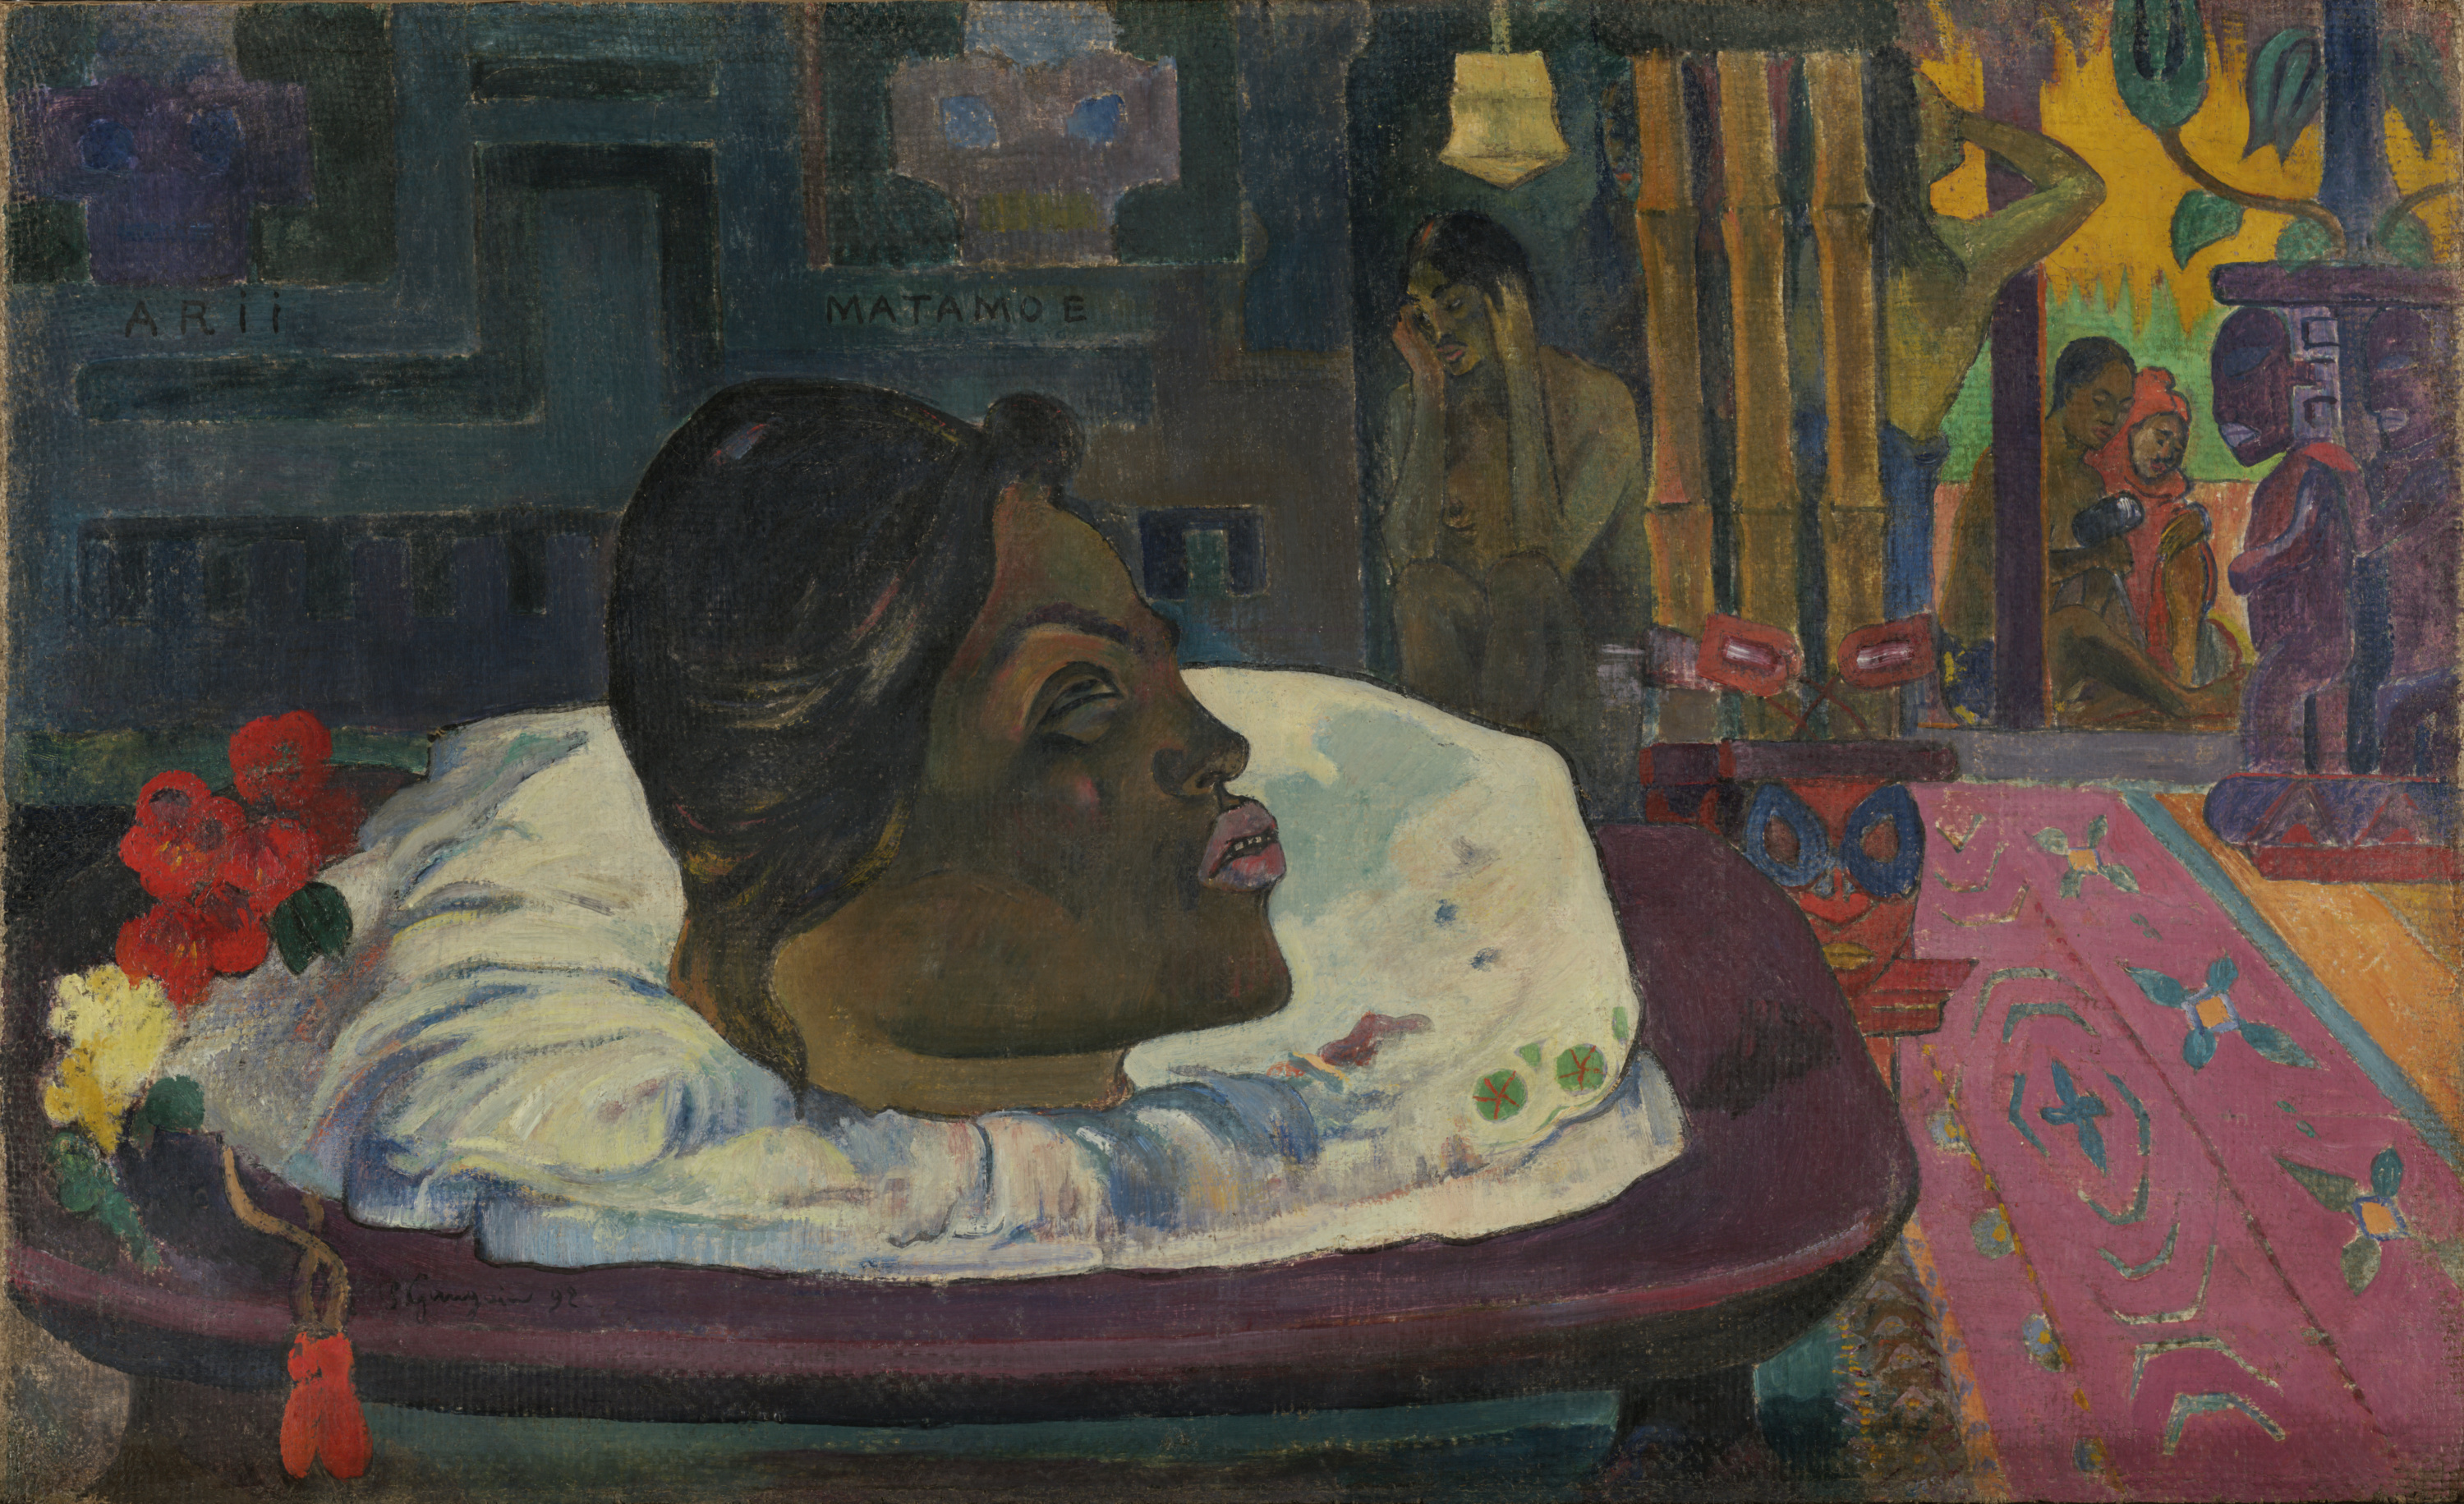 Άρι Ματαμόε (Το βασιλικό τέλος) by Paul Gauguin - 1892 - 45,1 × 74,3 εκ. 